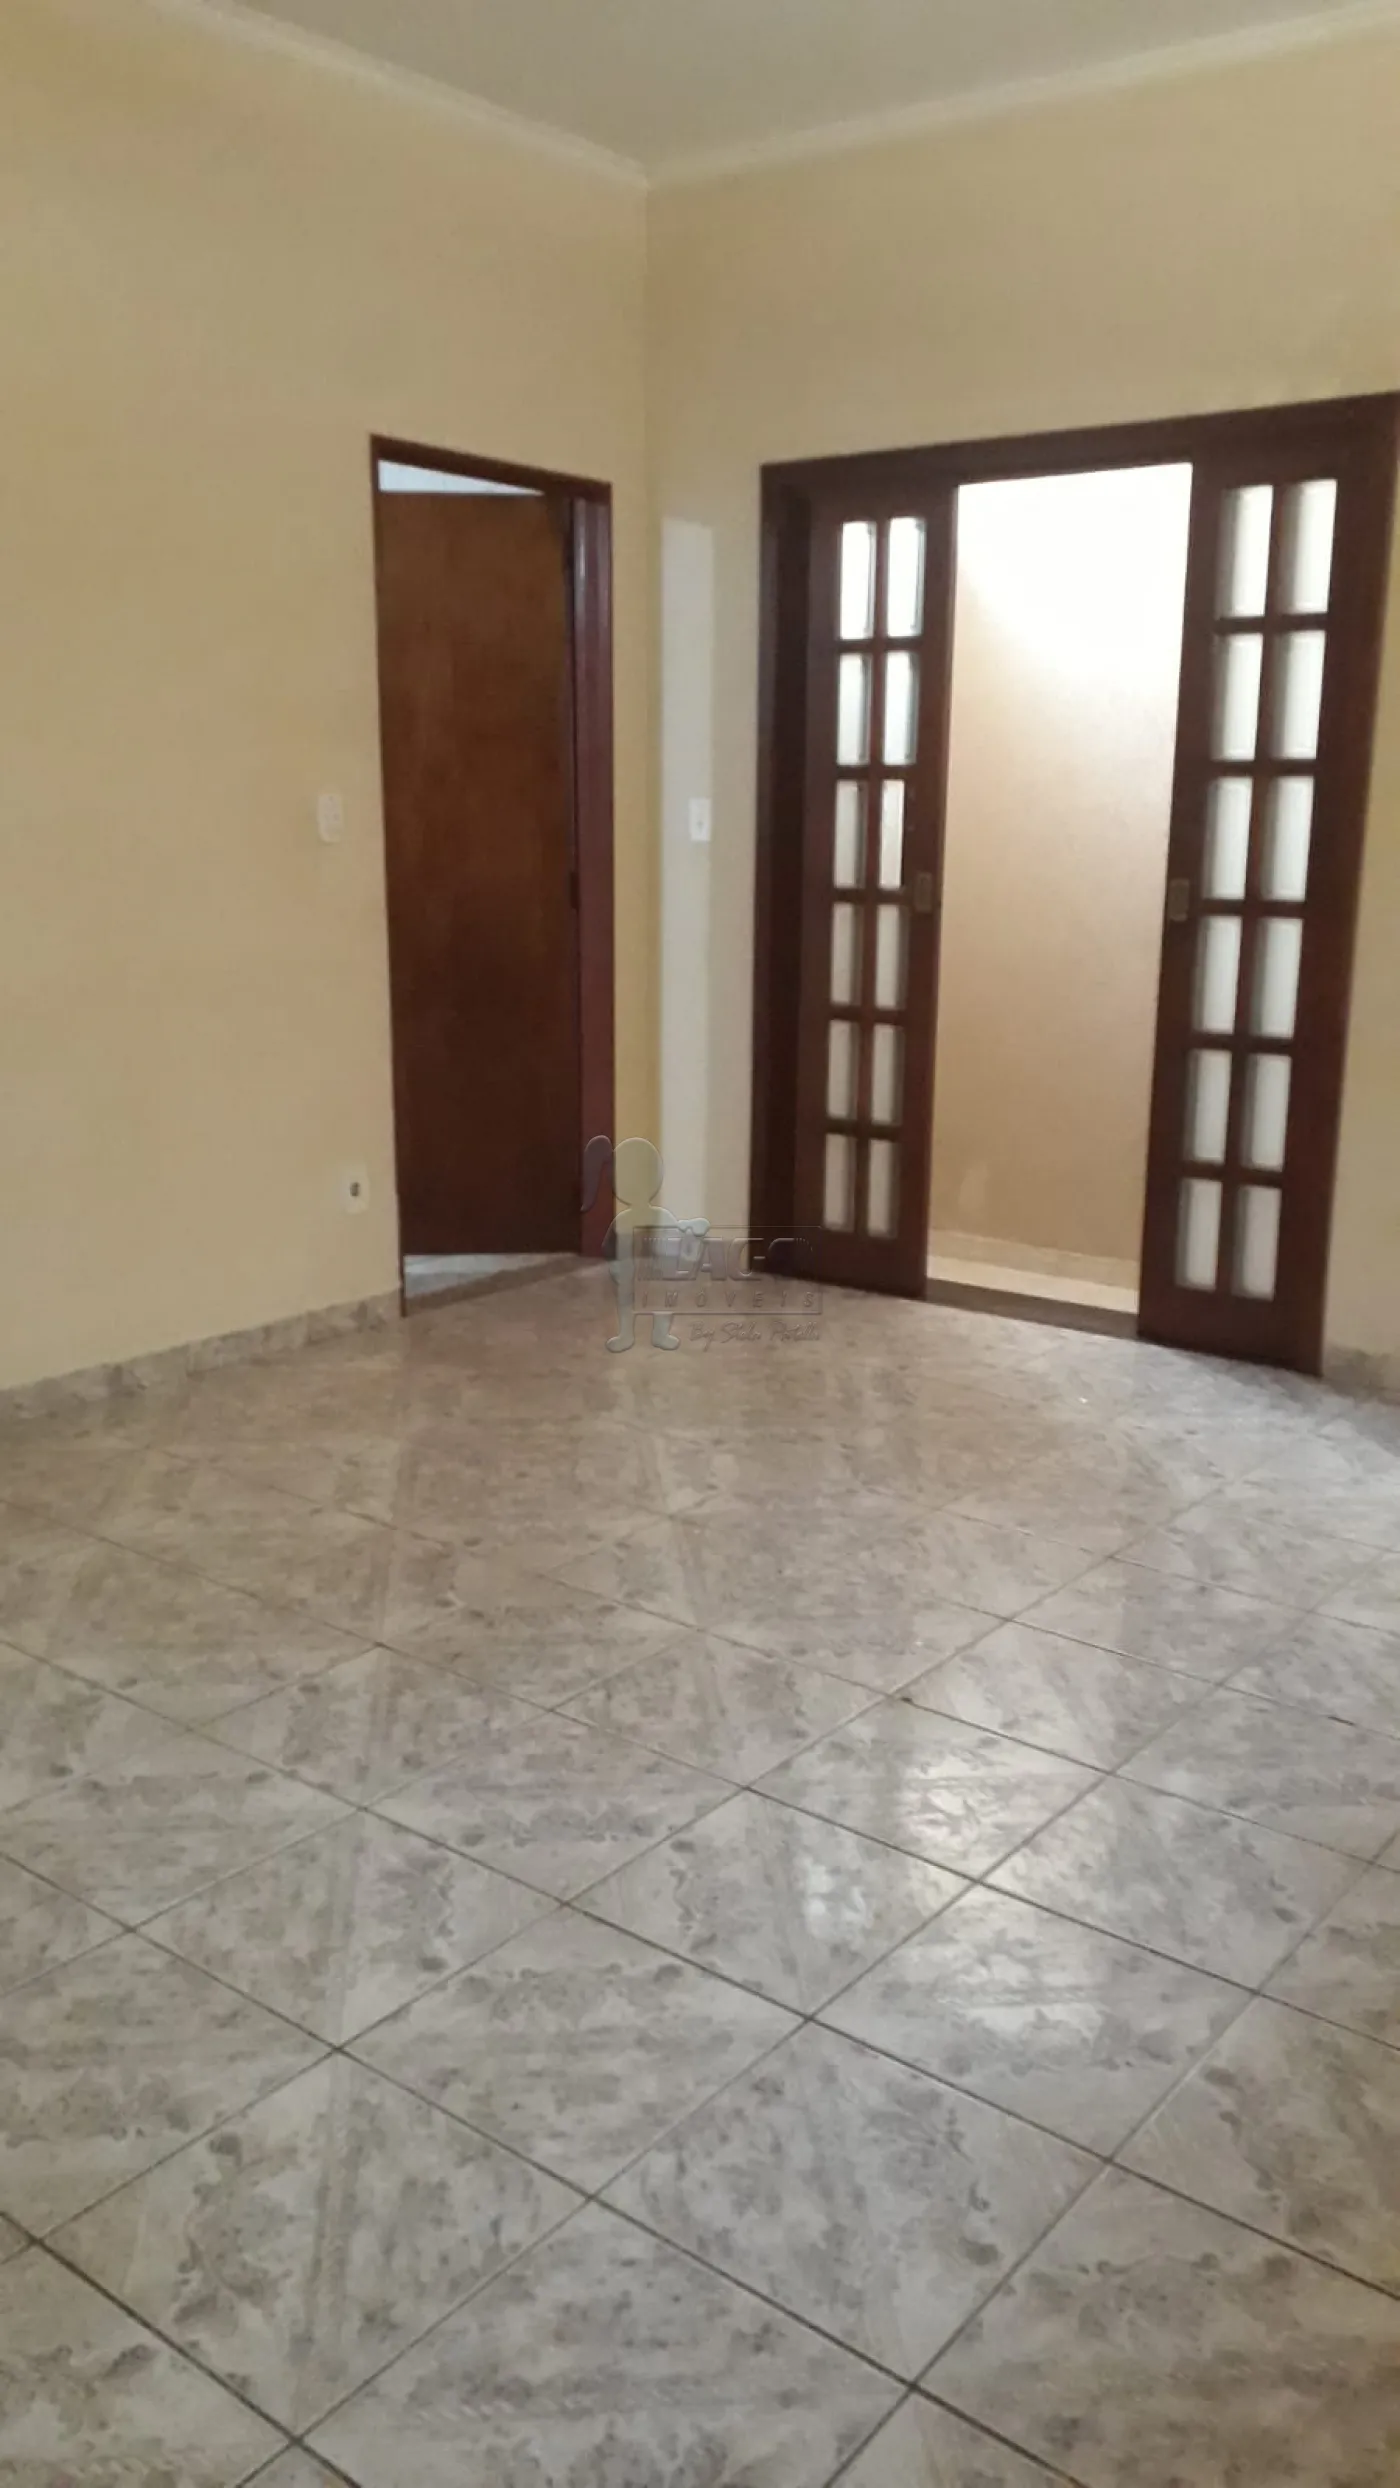 Comprar Casas / Padrão em Ribeirão Preto R$ 370.000,00 - Foto 6